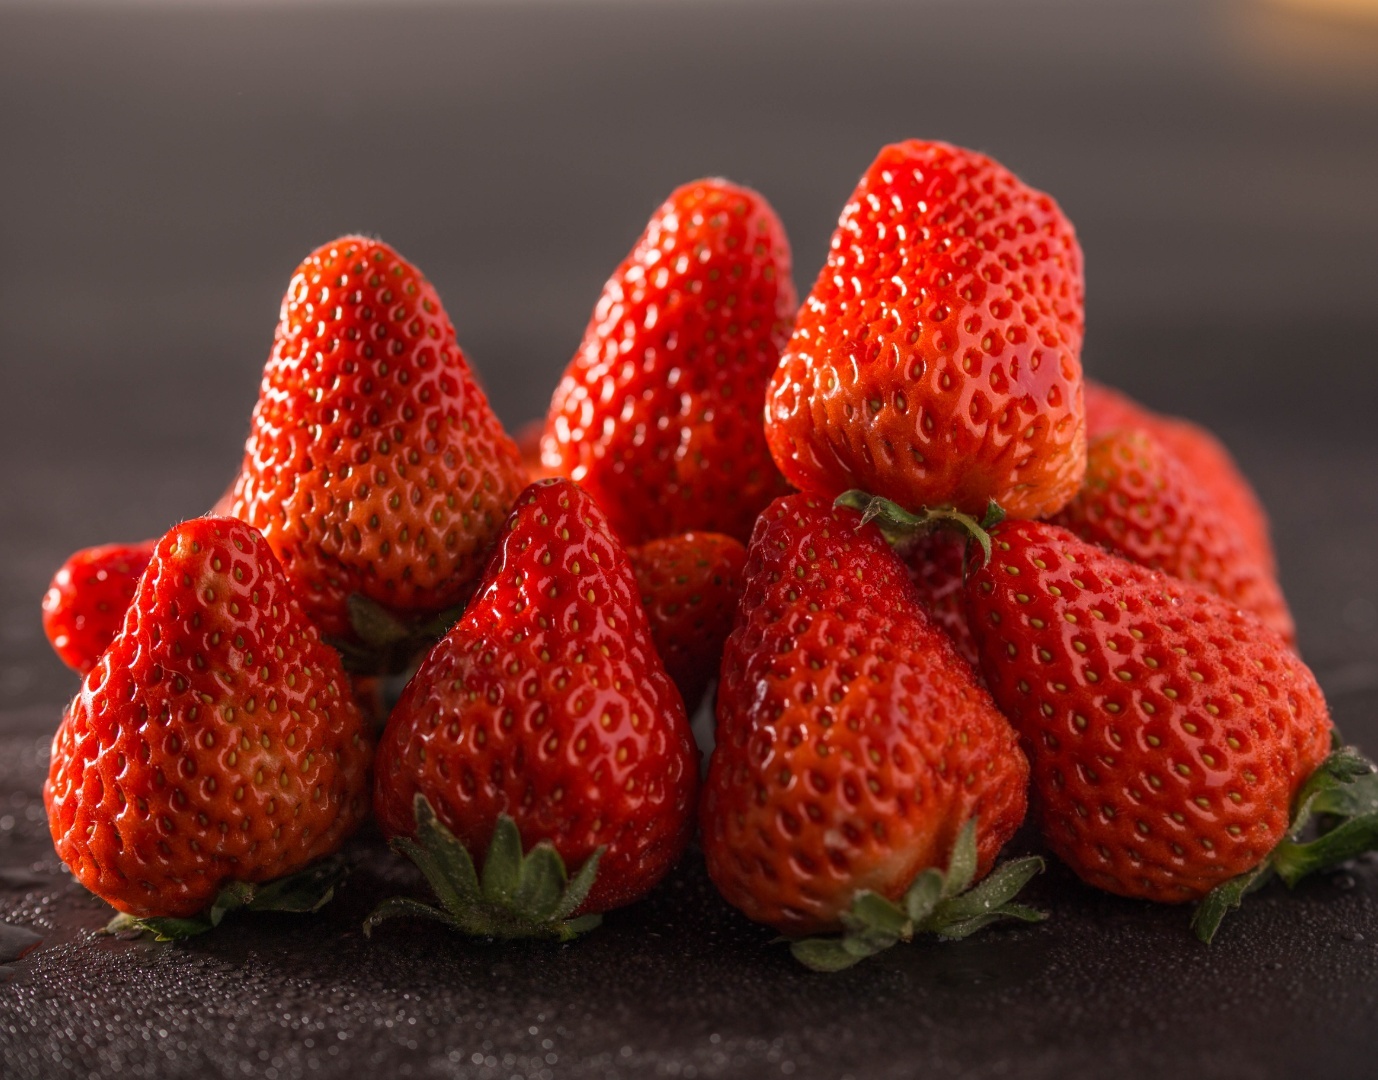 盘子里甜甜的草莓 库存照片. 图片 包括有 饮食, 红色, 自然, 牌照, 果子, 草莓, 素食主义者 - 249113810